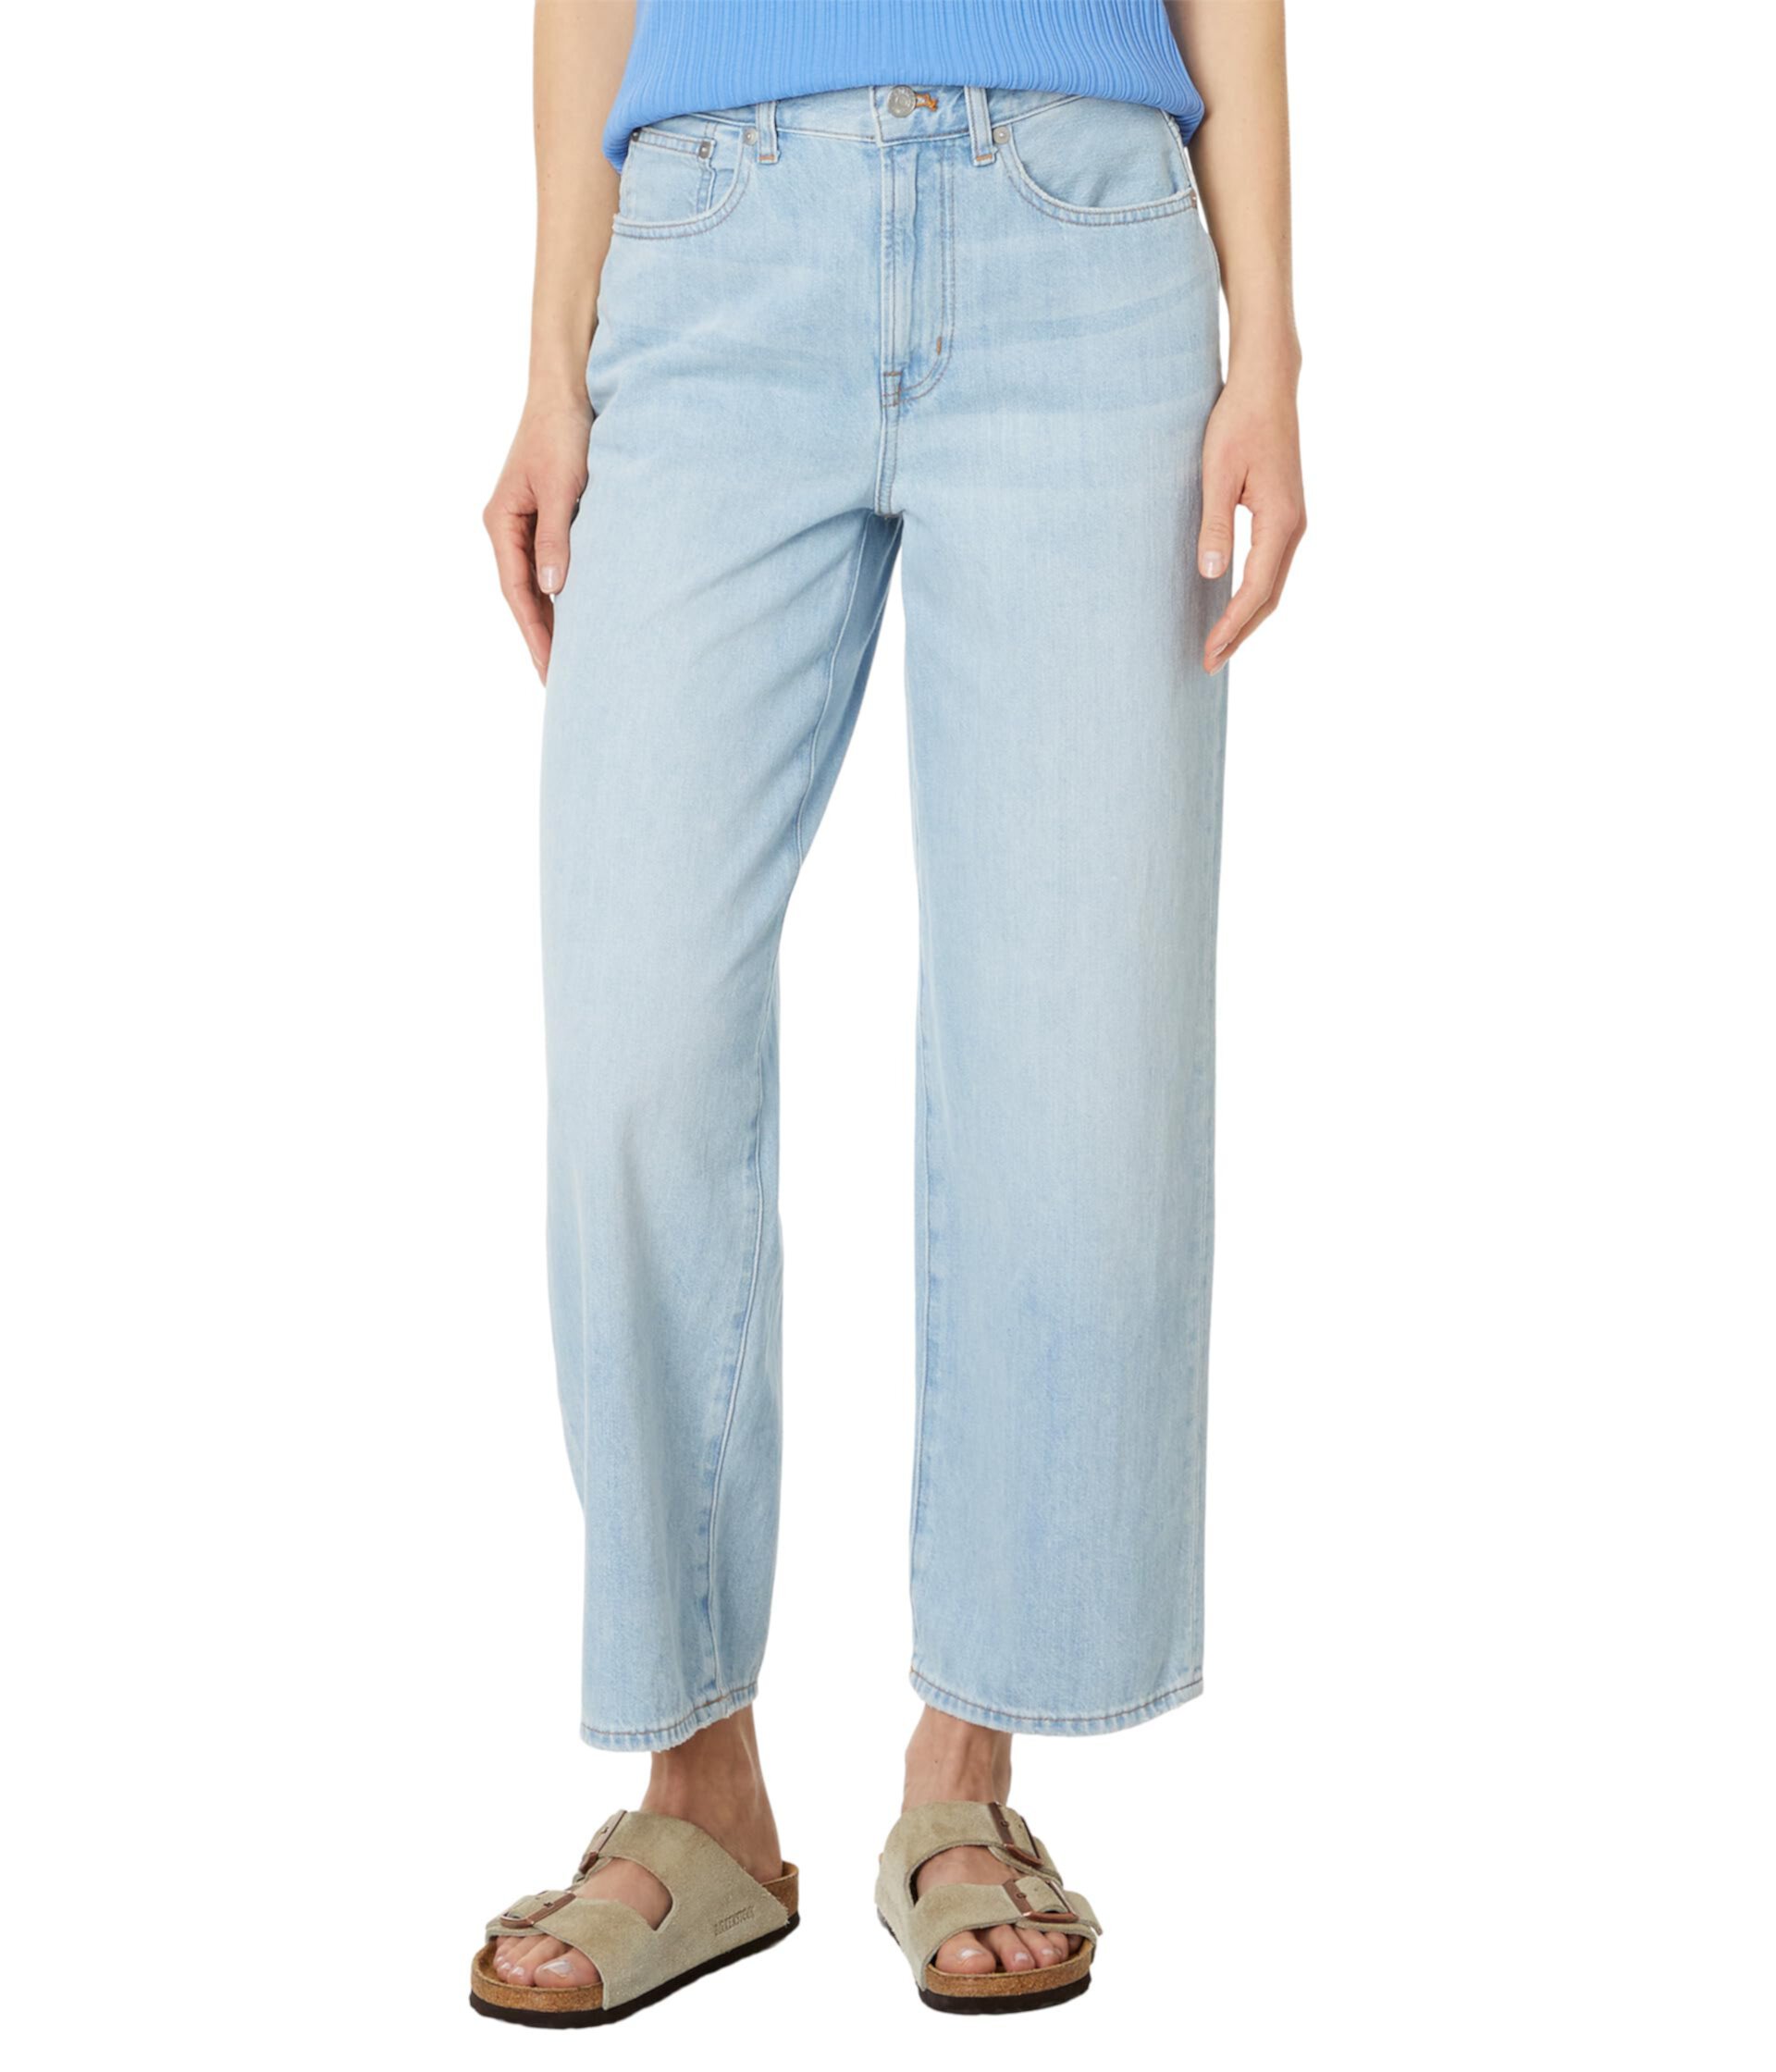 Укороченные джинсы Perfect Vintage в цвете Fitzgerald Madewell